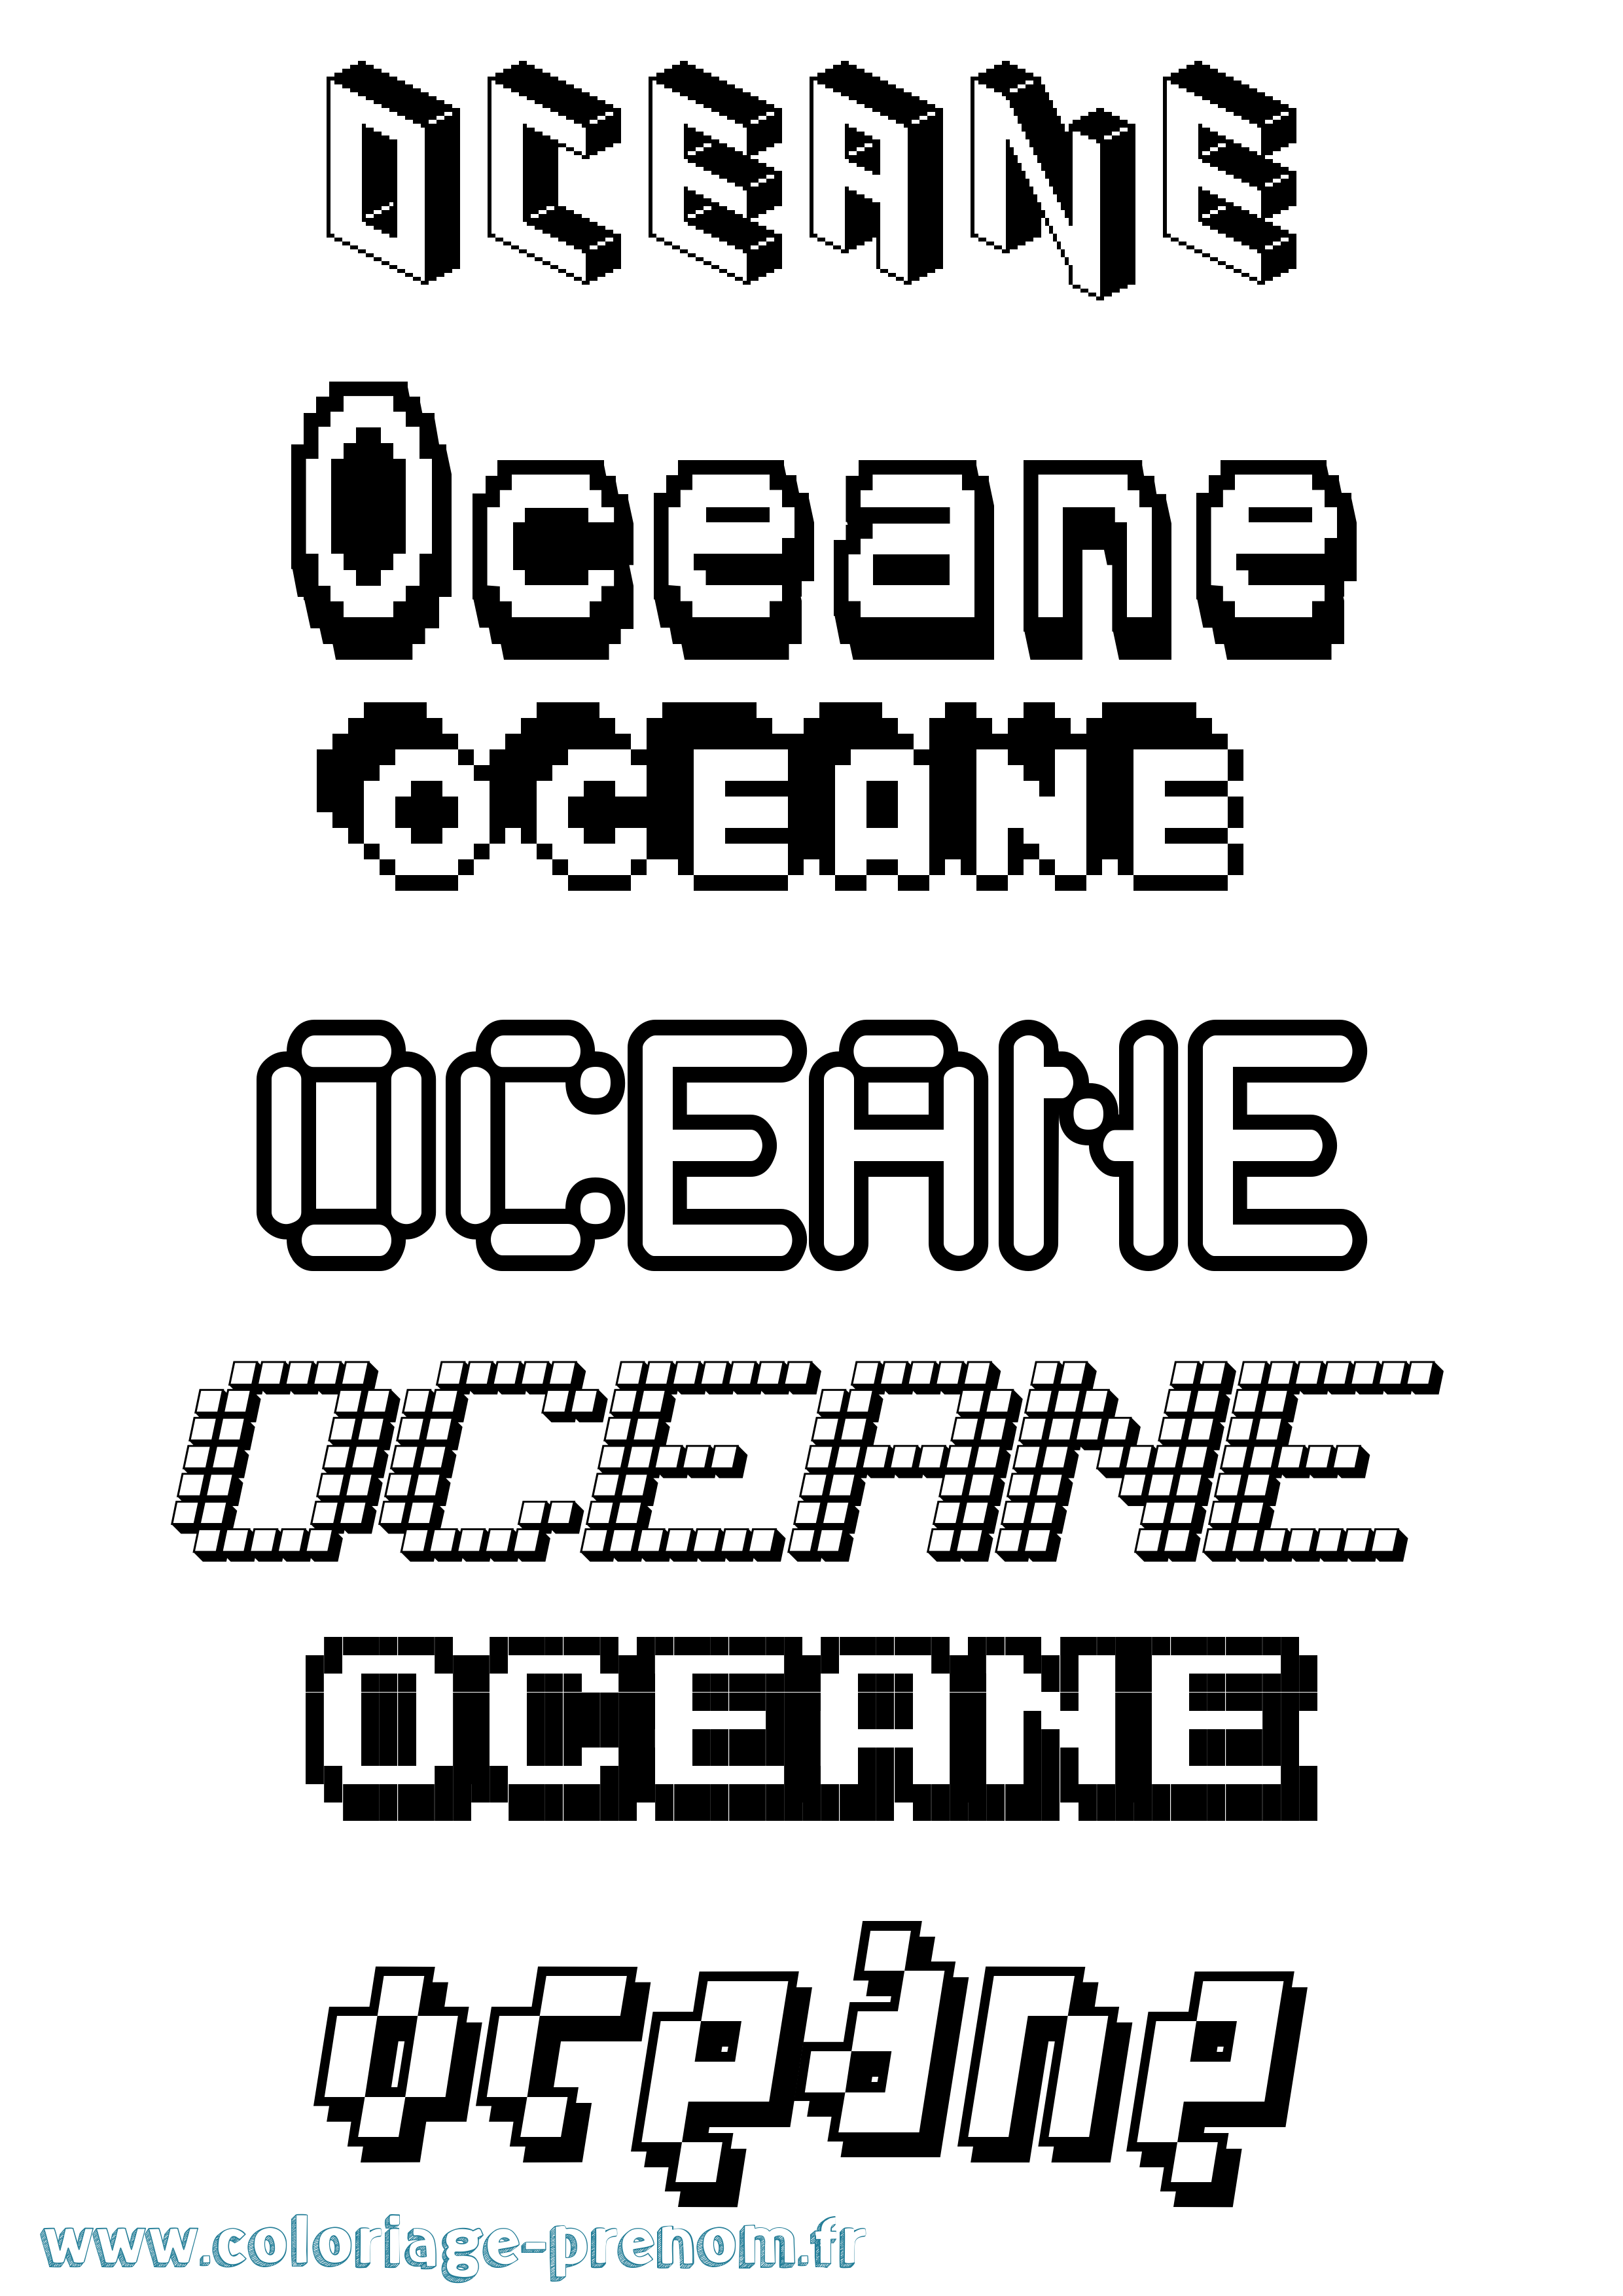 Coloriage prénom Oceane